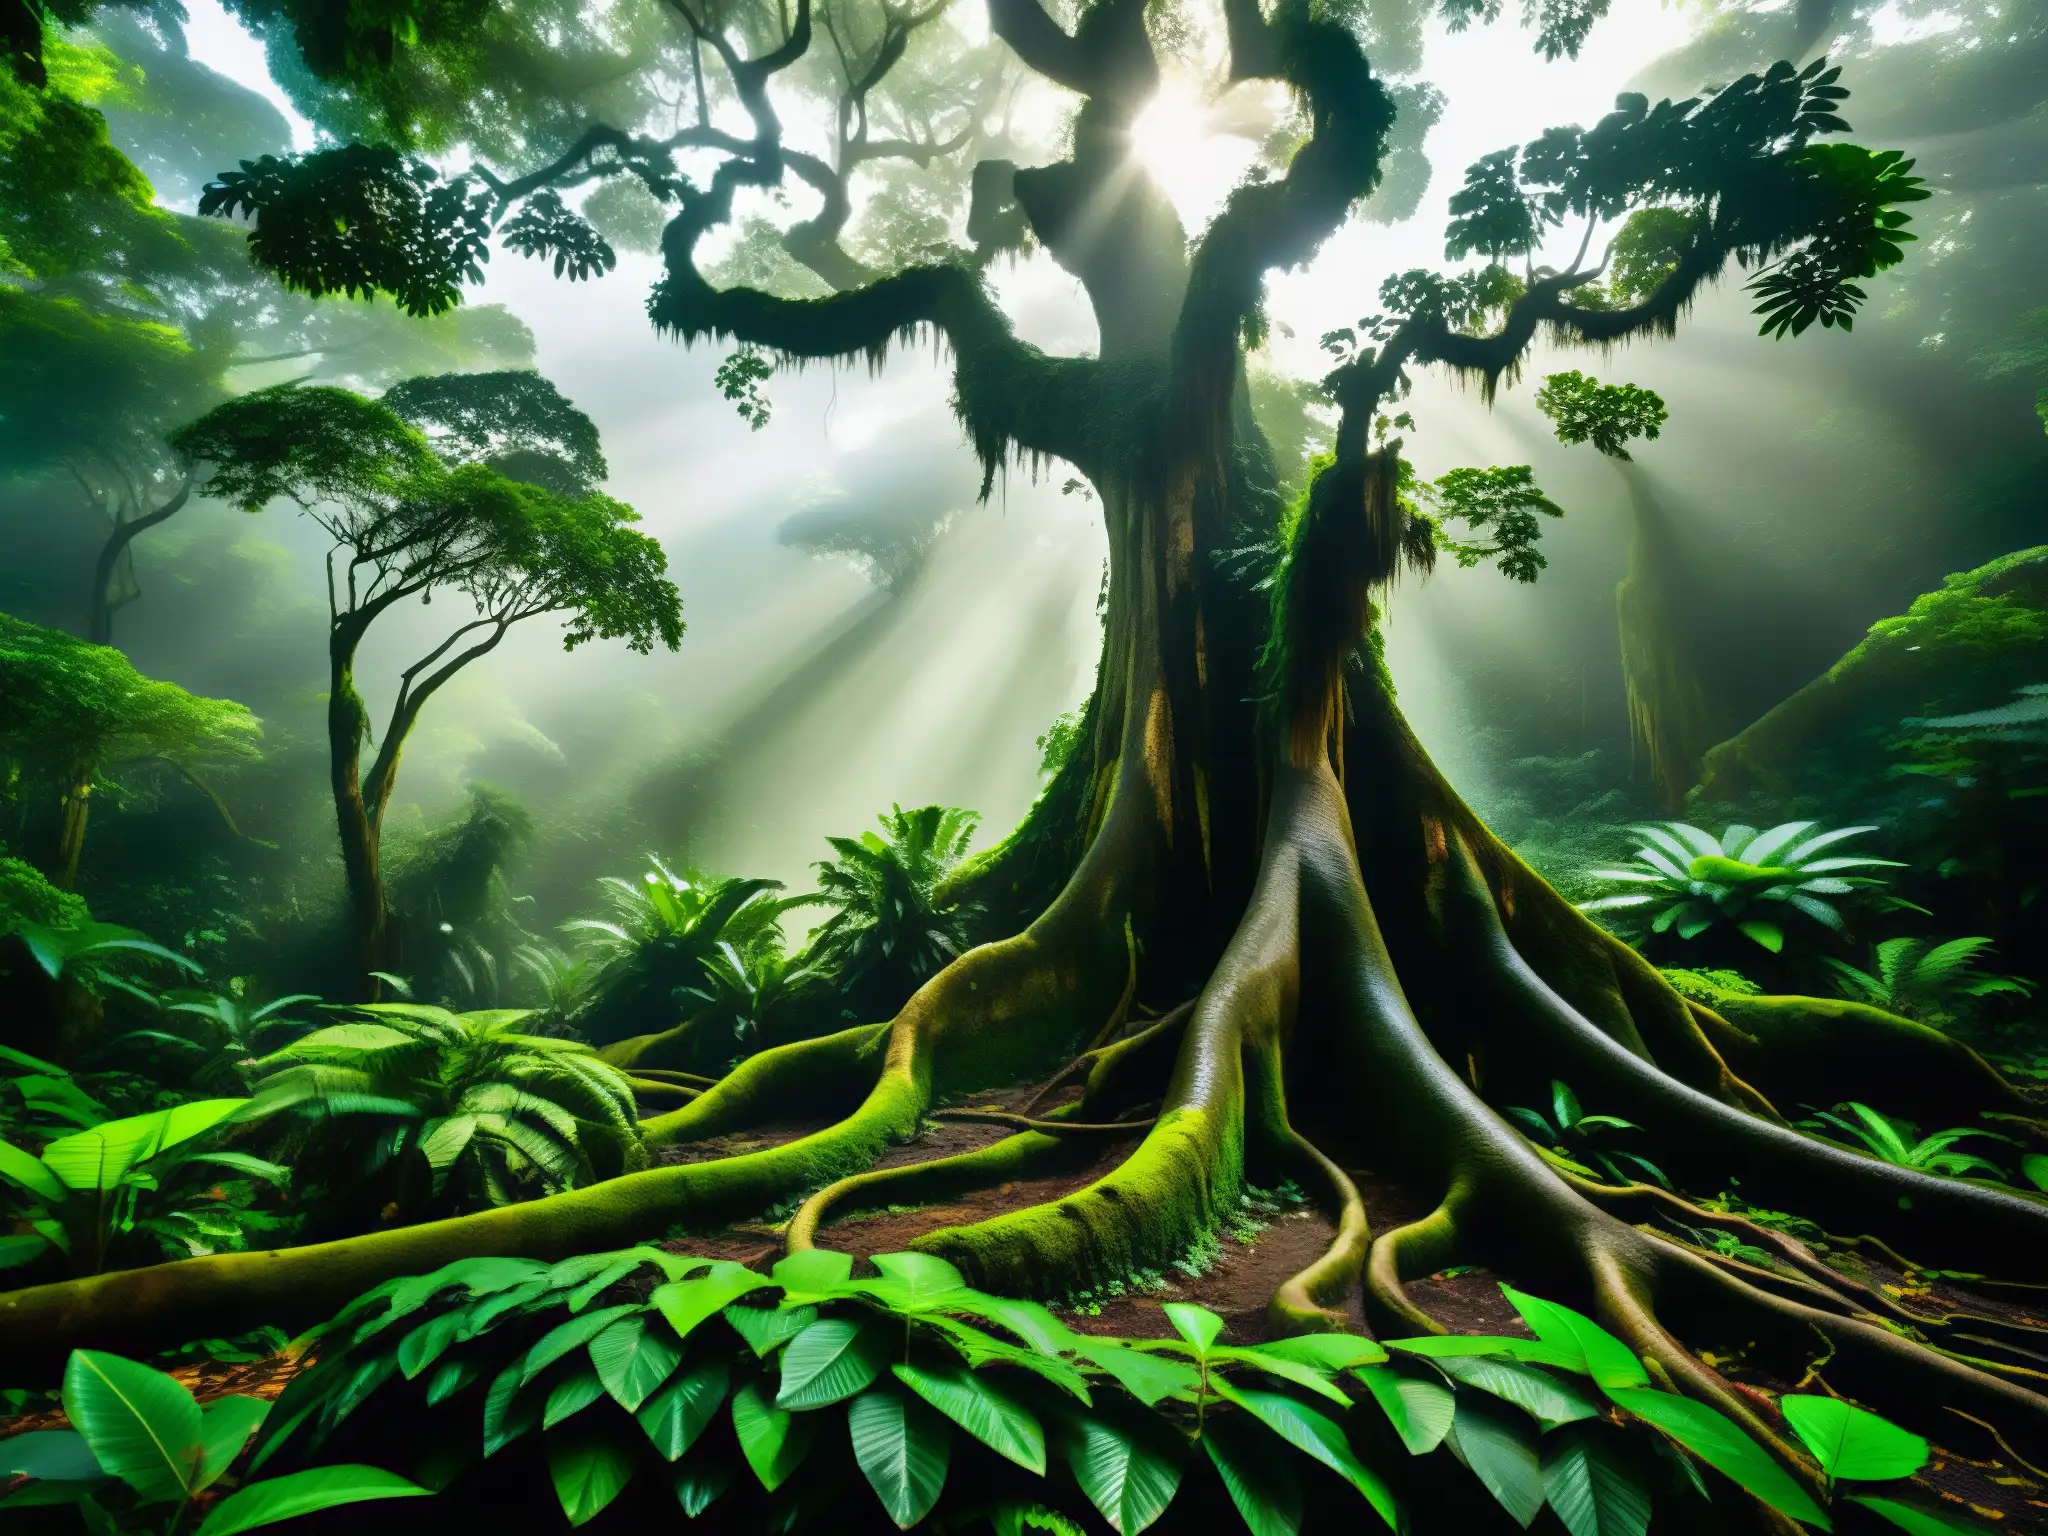 Un bosque denso y exuberante de la Amazonía con árboles imponentes, follaje verde vibrante y una atmósfera brumosa y misteriosa